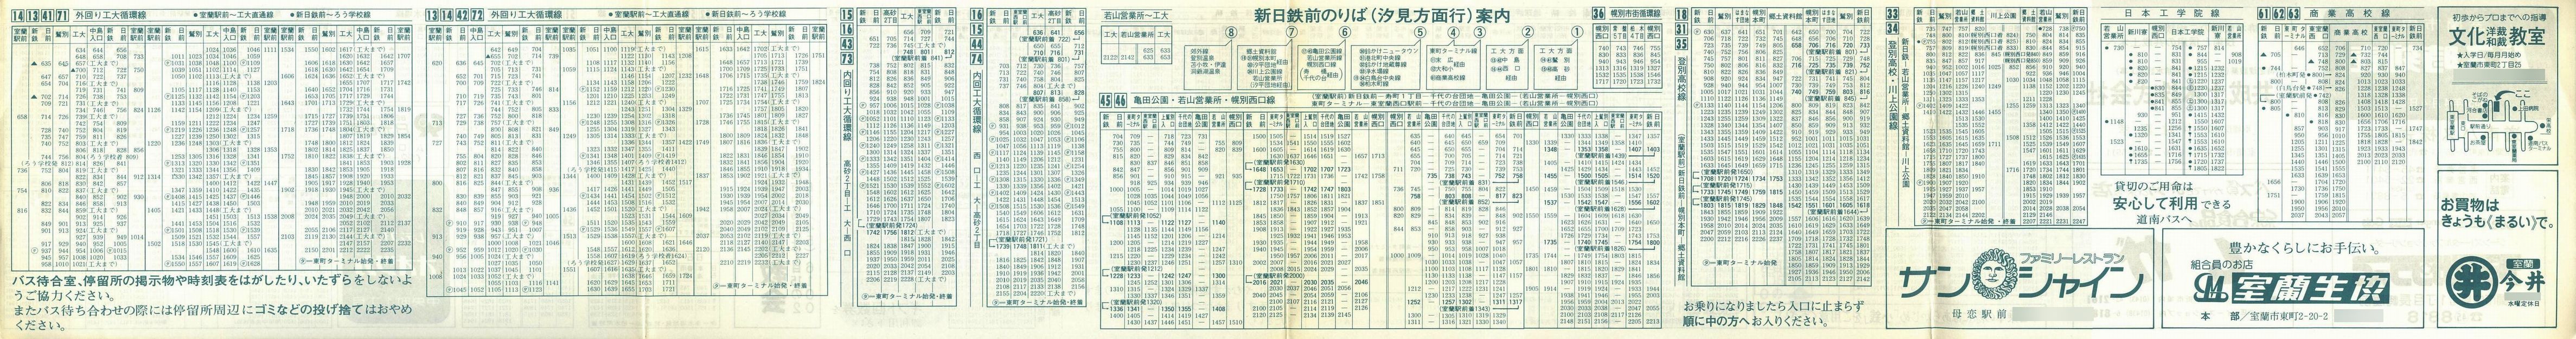 1982-04-04改正_道南バス_室蘭市内線時刻表裏面